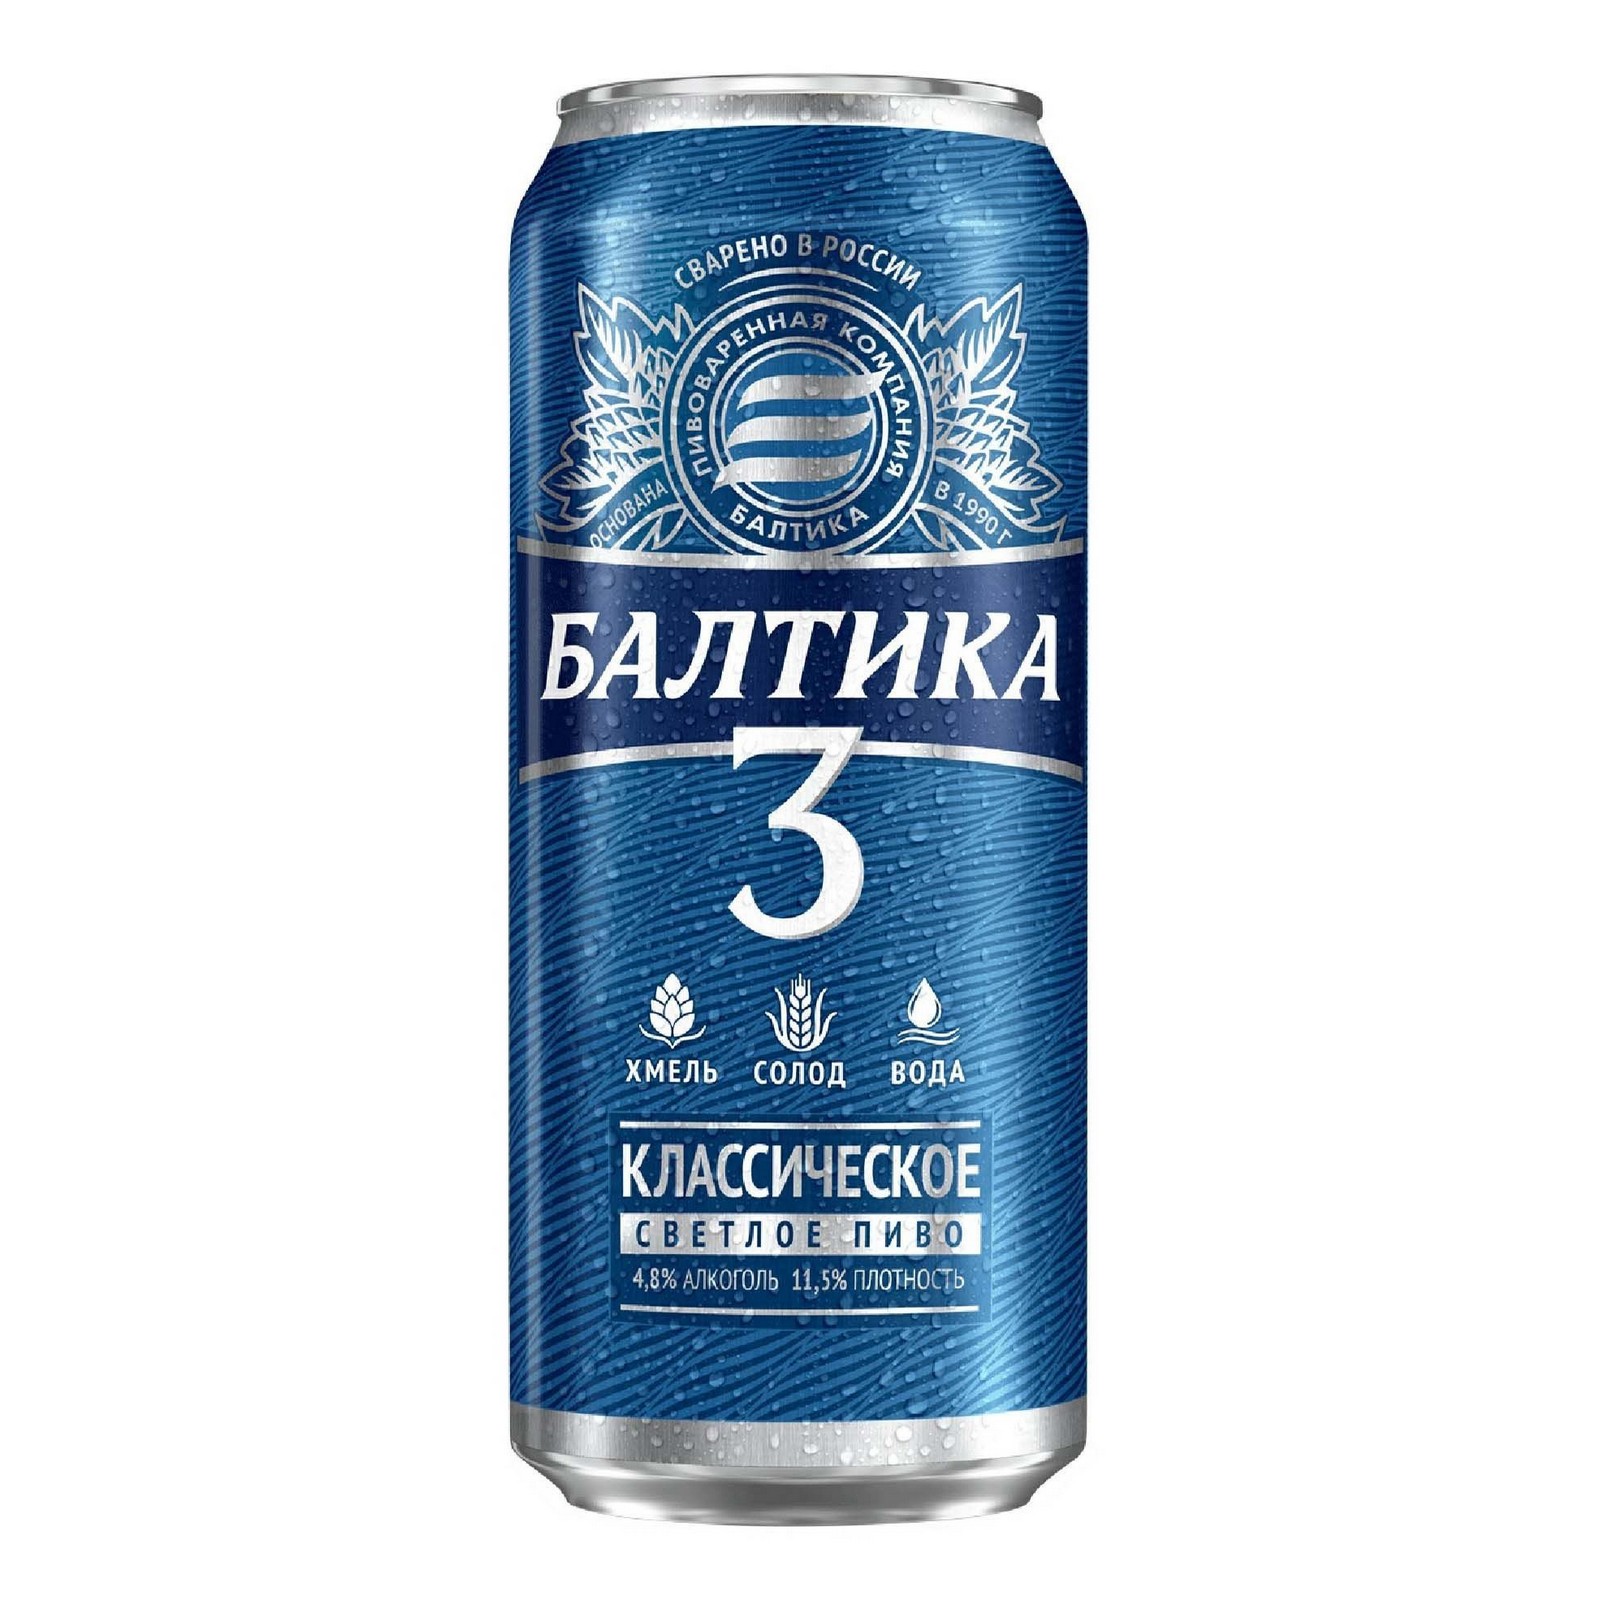 Пиво балтика где купить